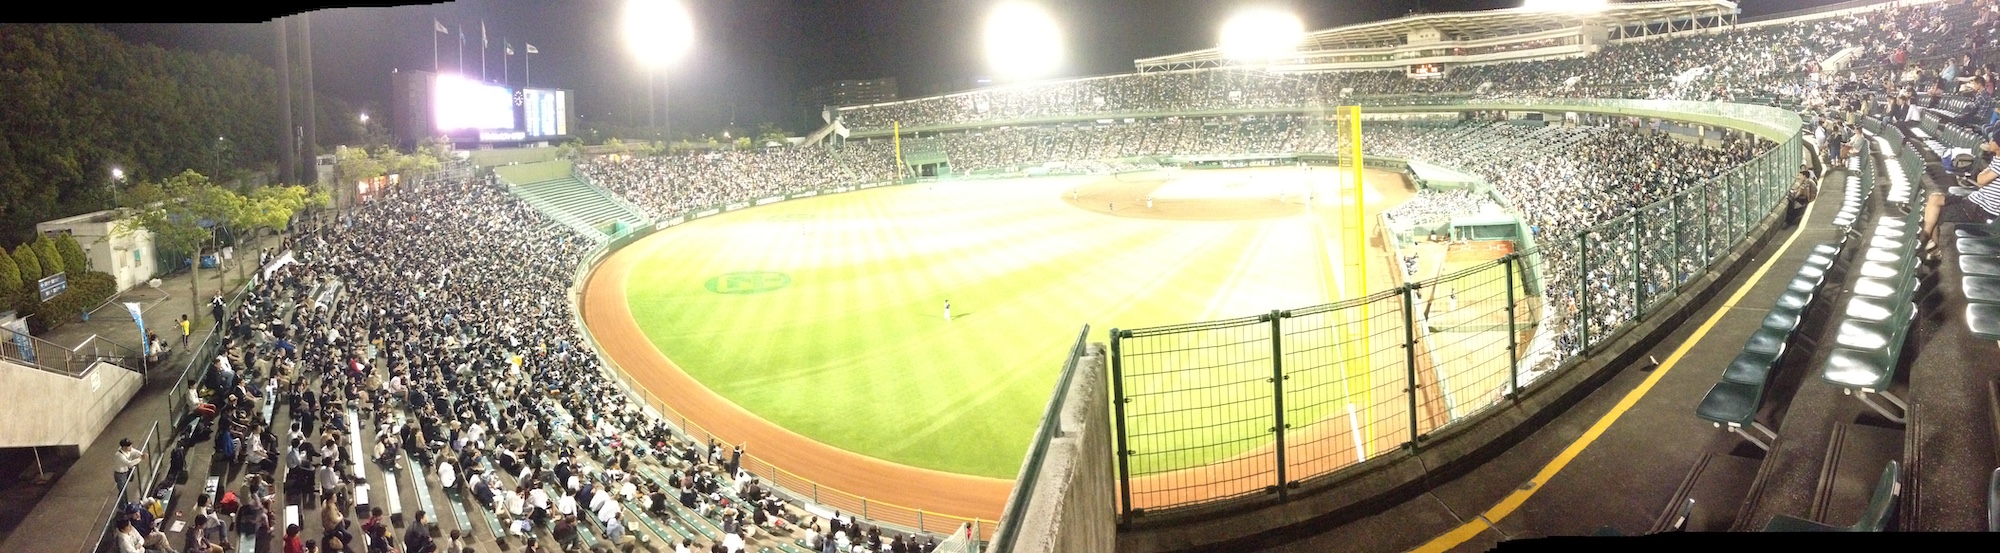 22年 ほっともっとフィールド神戸 開催のプロ野球公式戦 Sse Notes